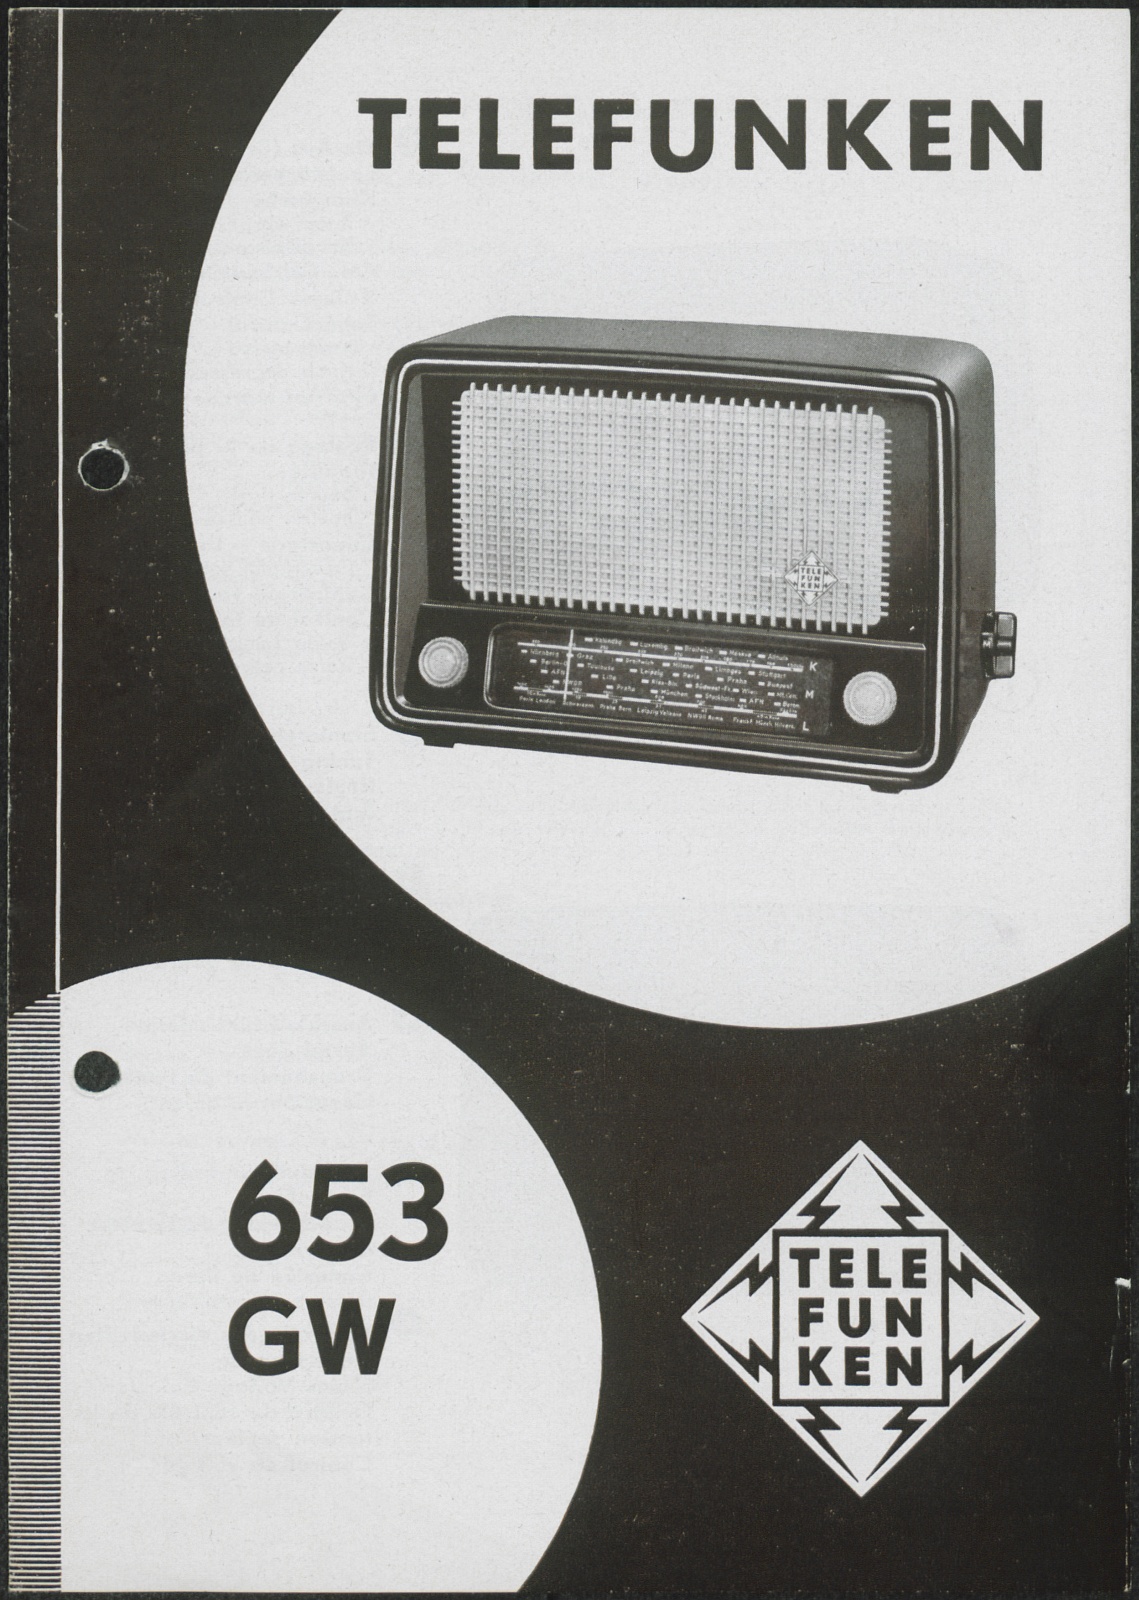 Bedienungsanleitung: Telefunken 653 GW (Stiftung Deutsches Technikmuseum Berlin CC0)